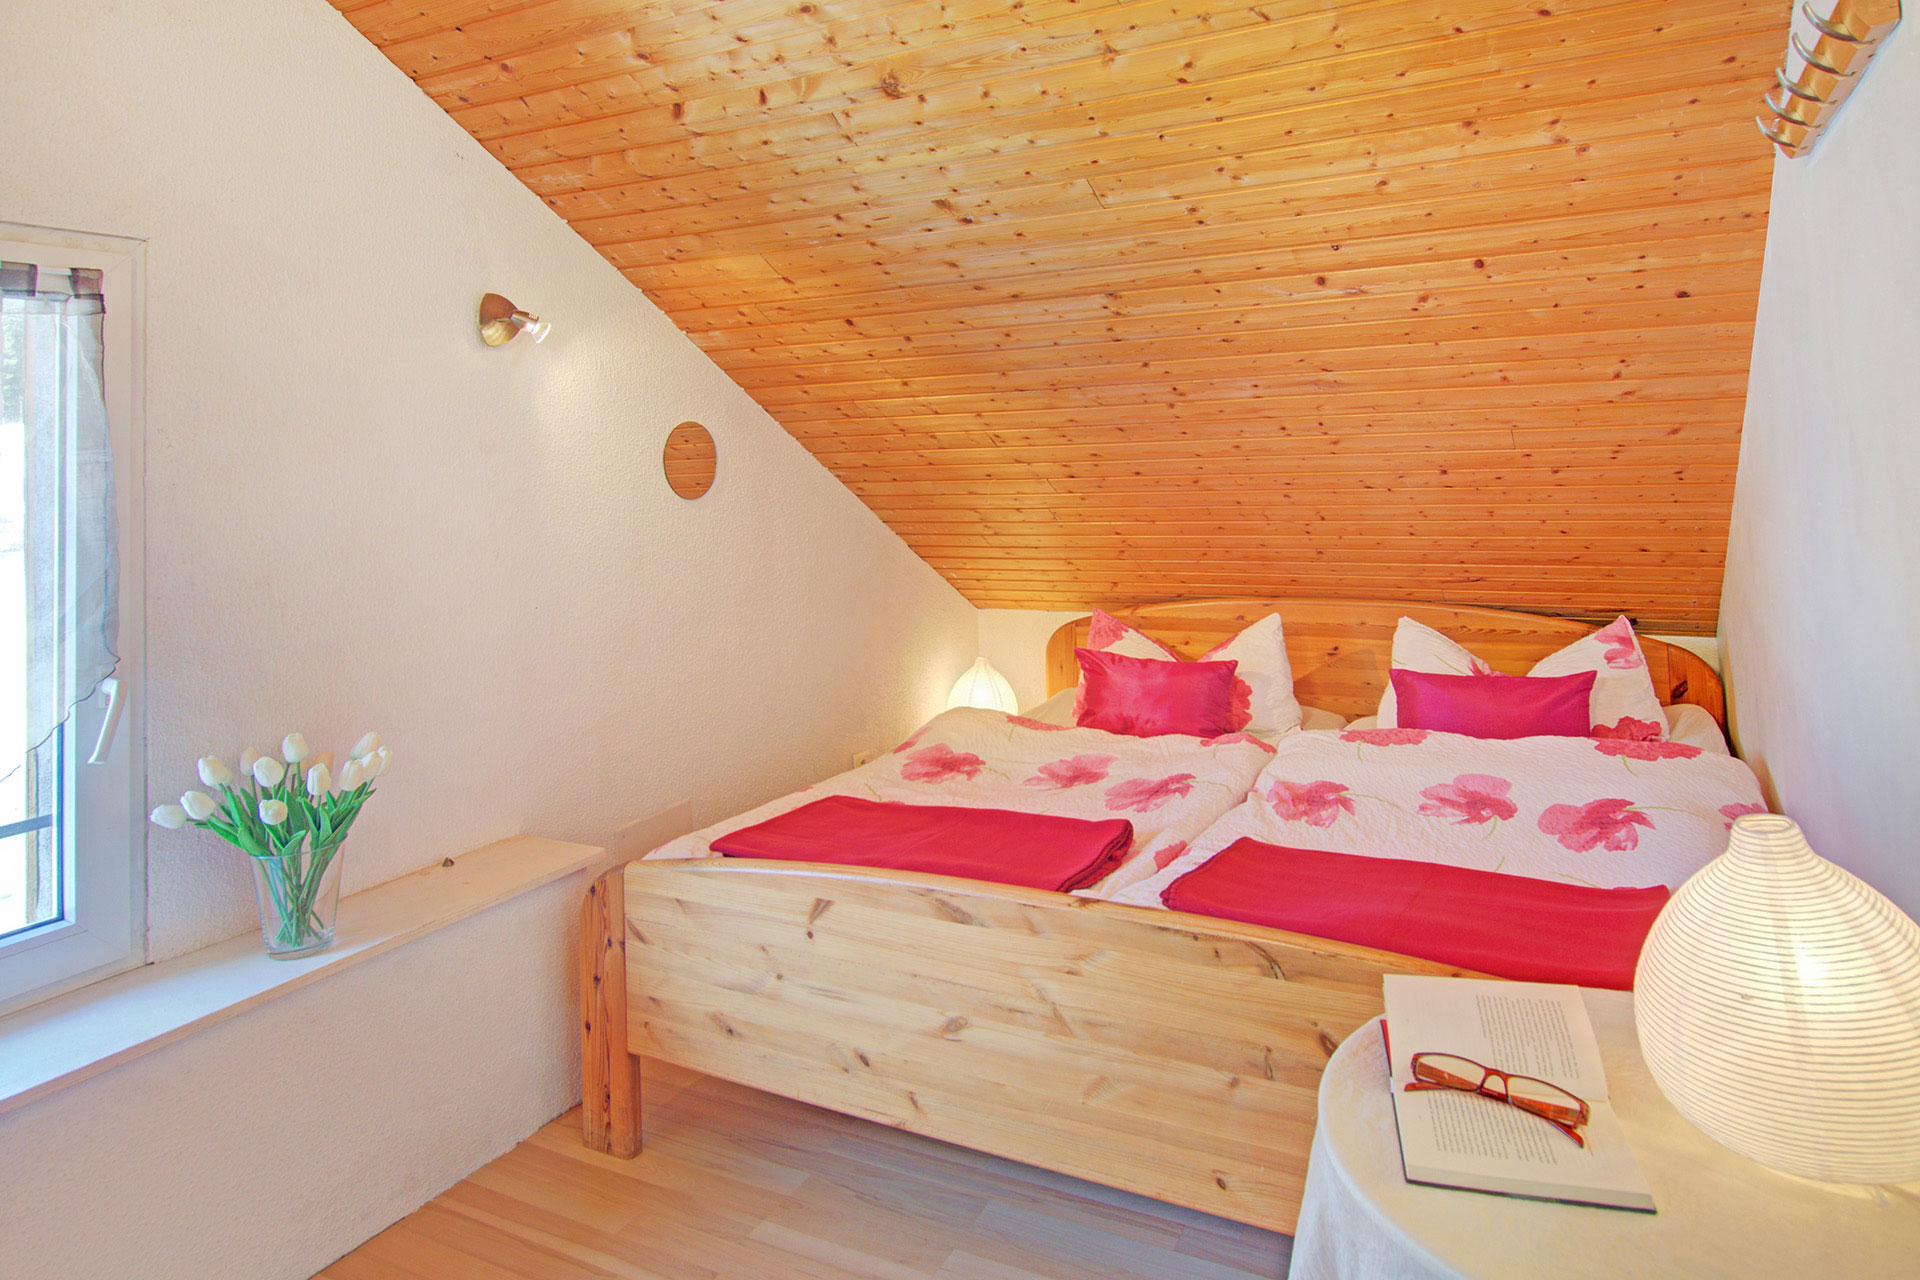 ferienhaus foto doppelzimmer mit rosaner bluetenbettwaesche und viloetten kissen mit weisen tulpen und seitlich mit lampe